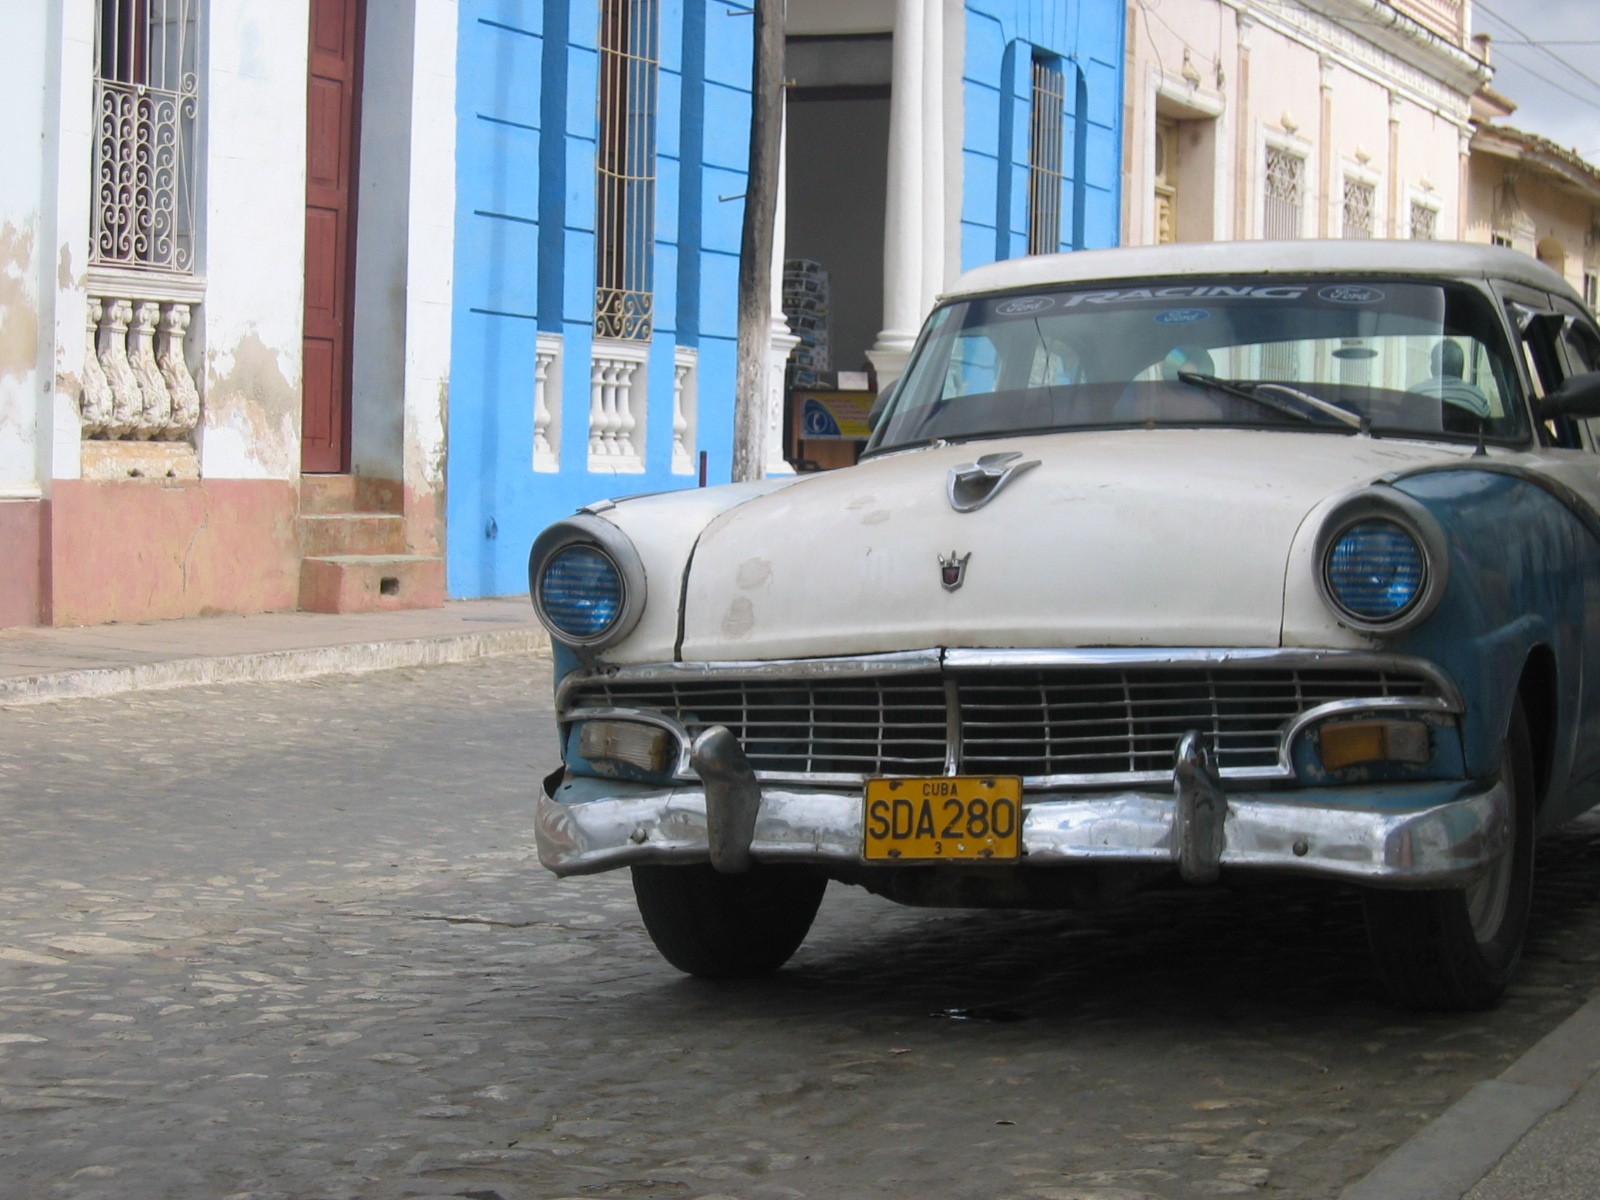 Cuba 2005 174.jpg